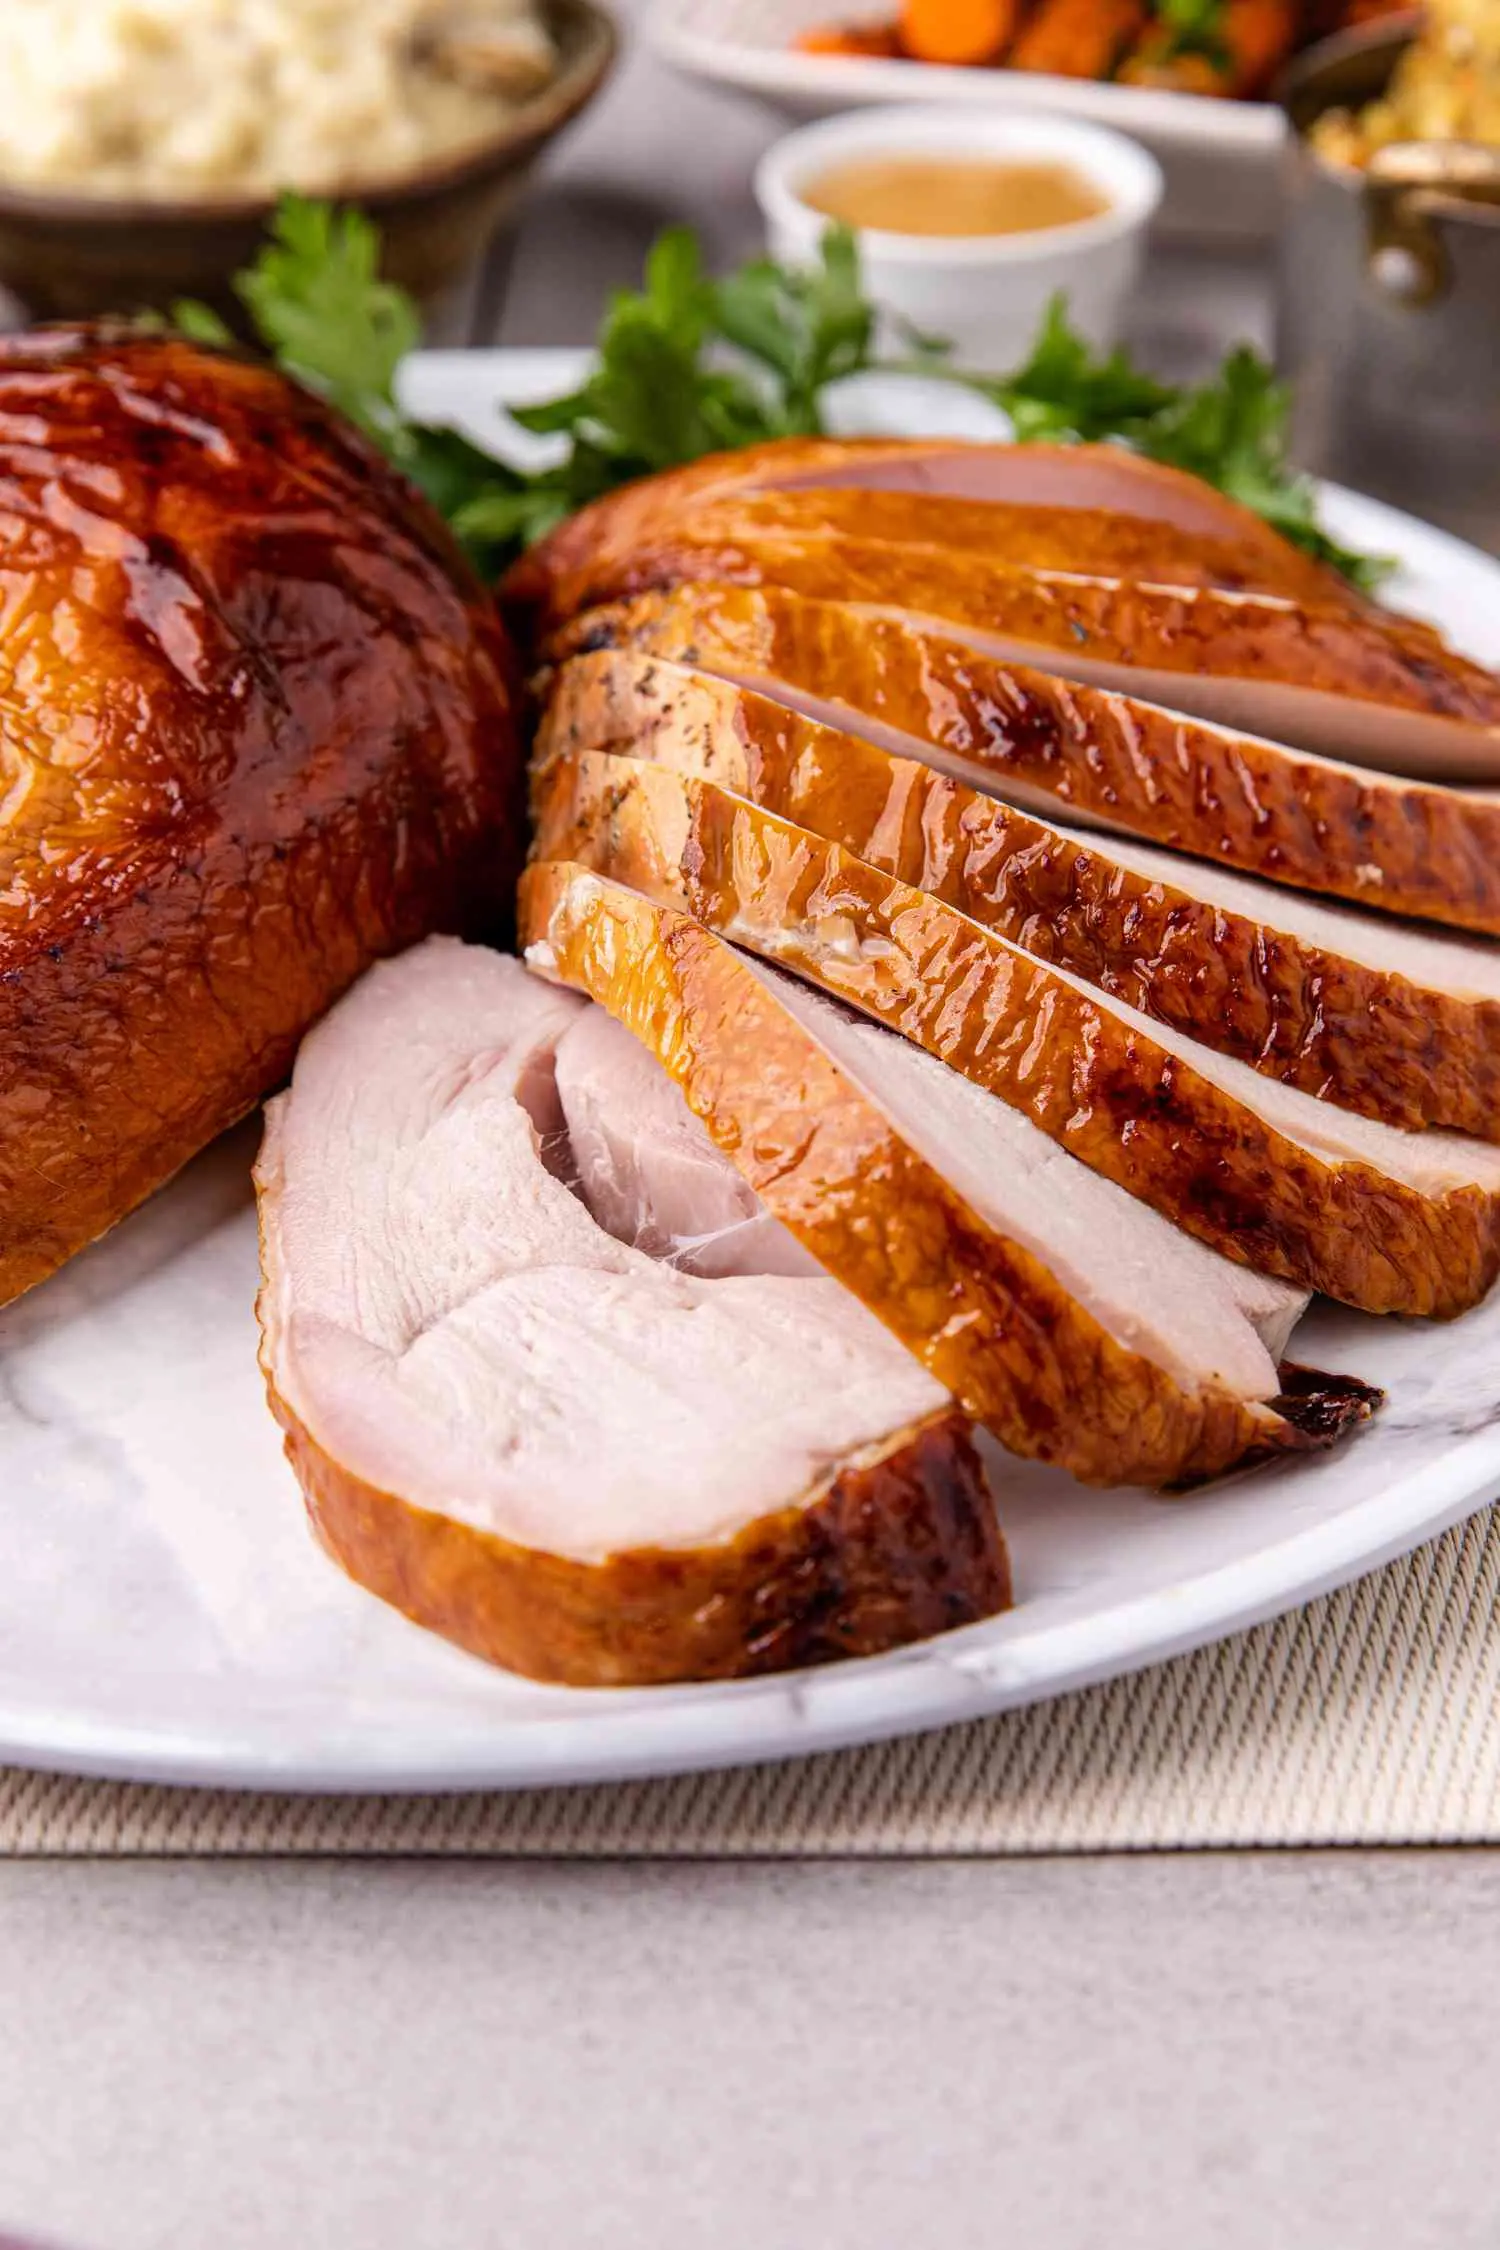 hickory smoked turkey breast recipe - Is hickory smoked turkey breast healthy